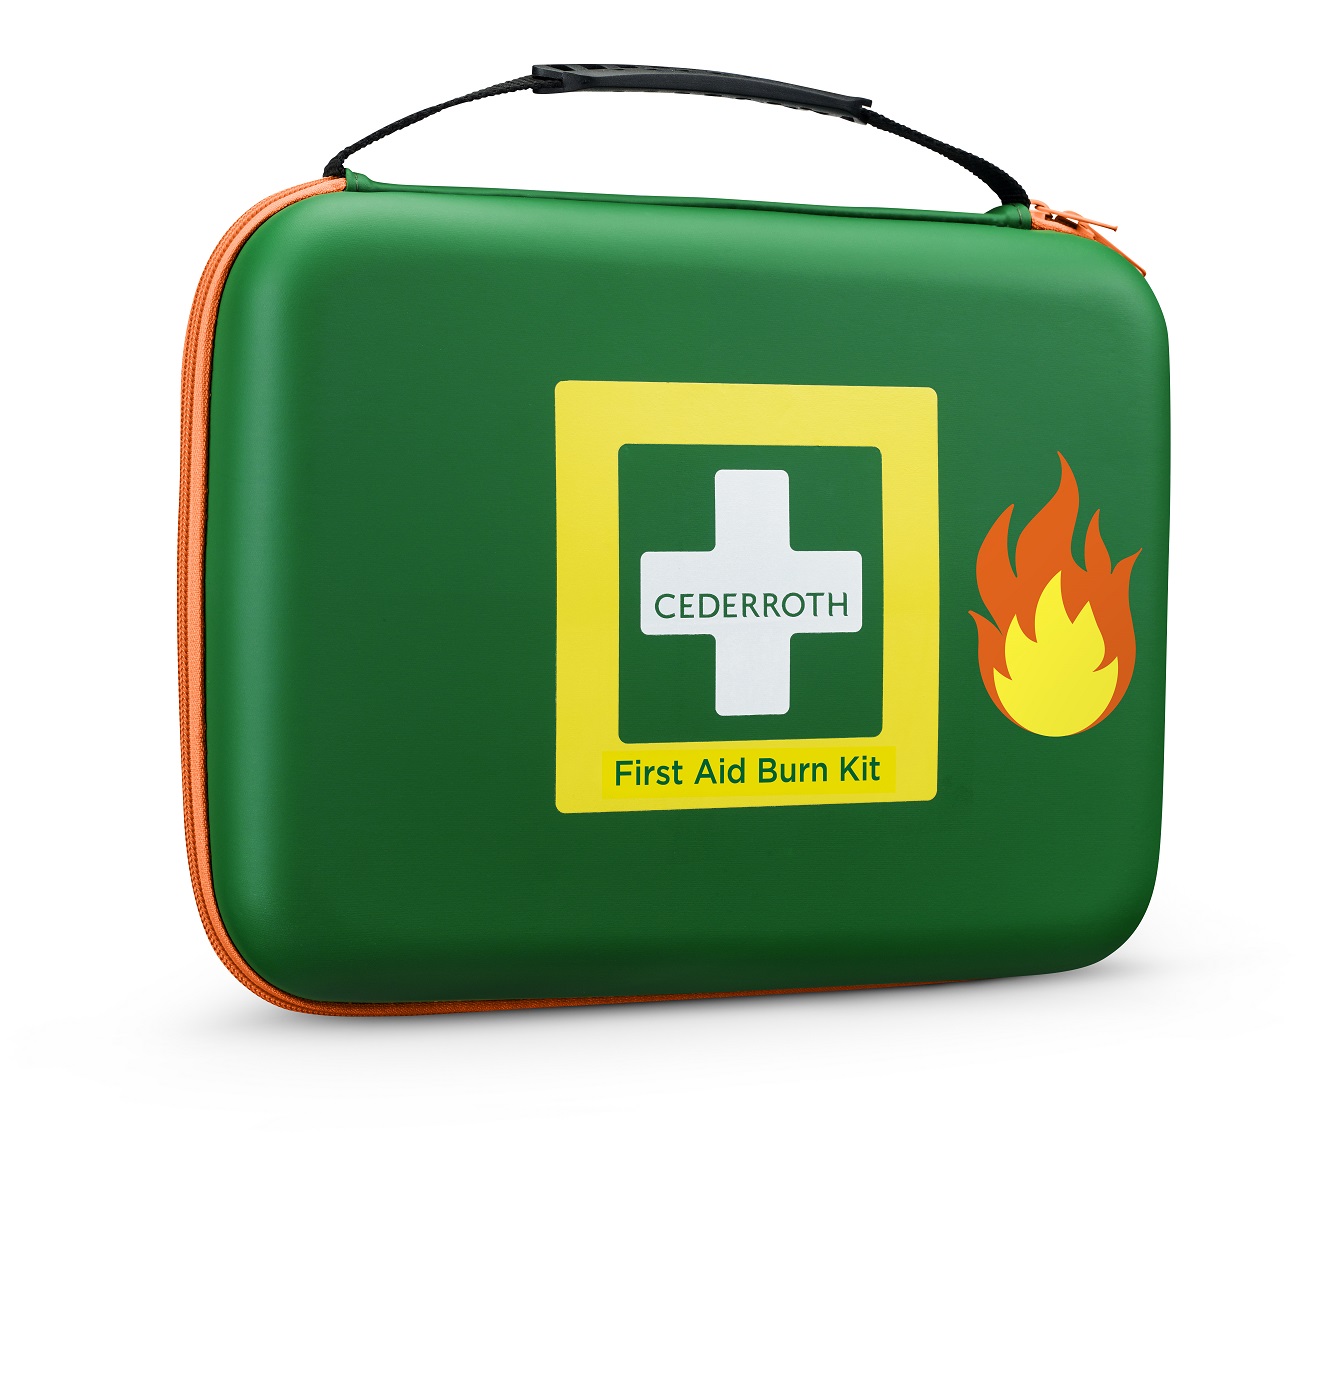 Cederroth Erste-Hilfe-Verbrennungs-Koffer